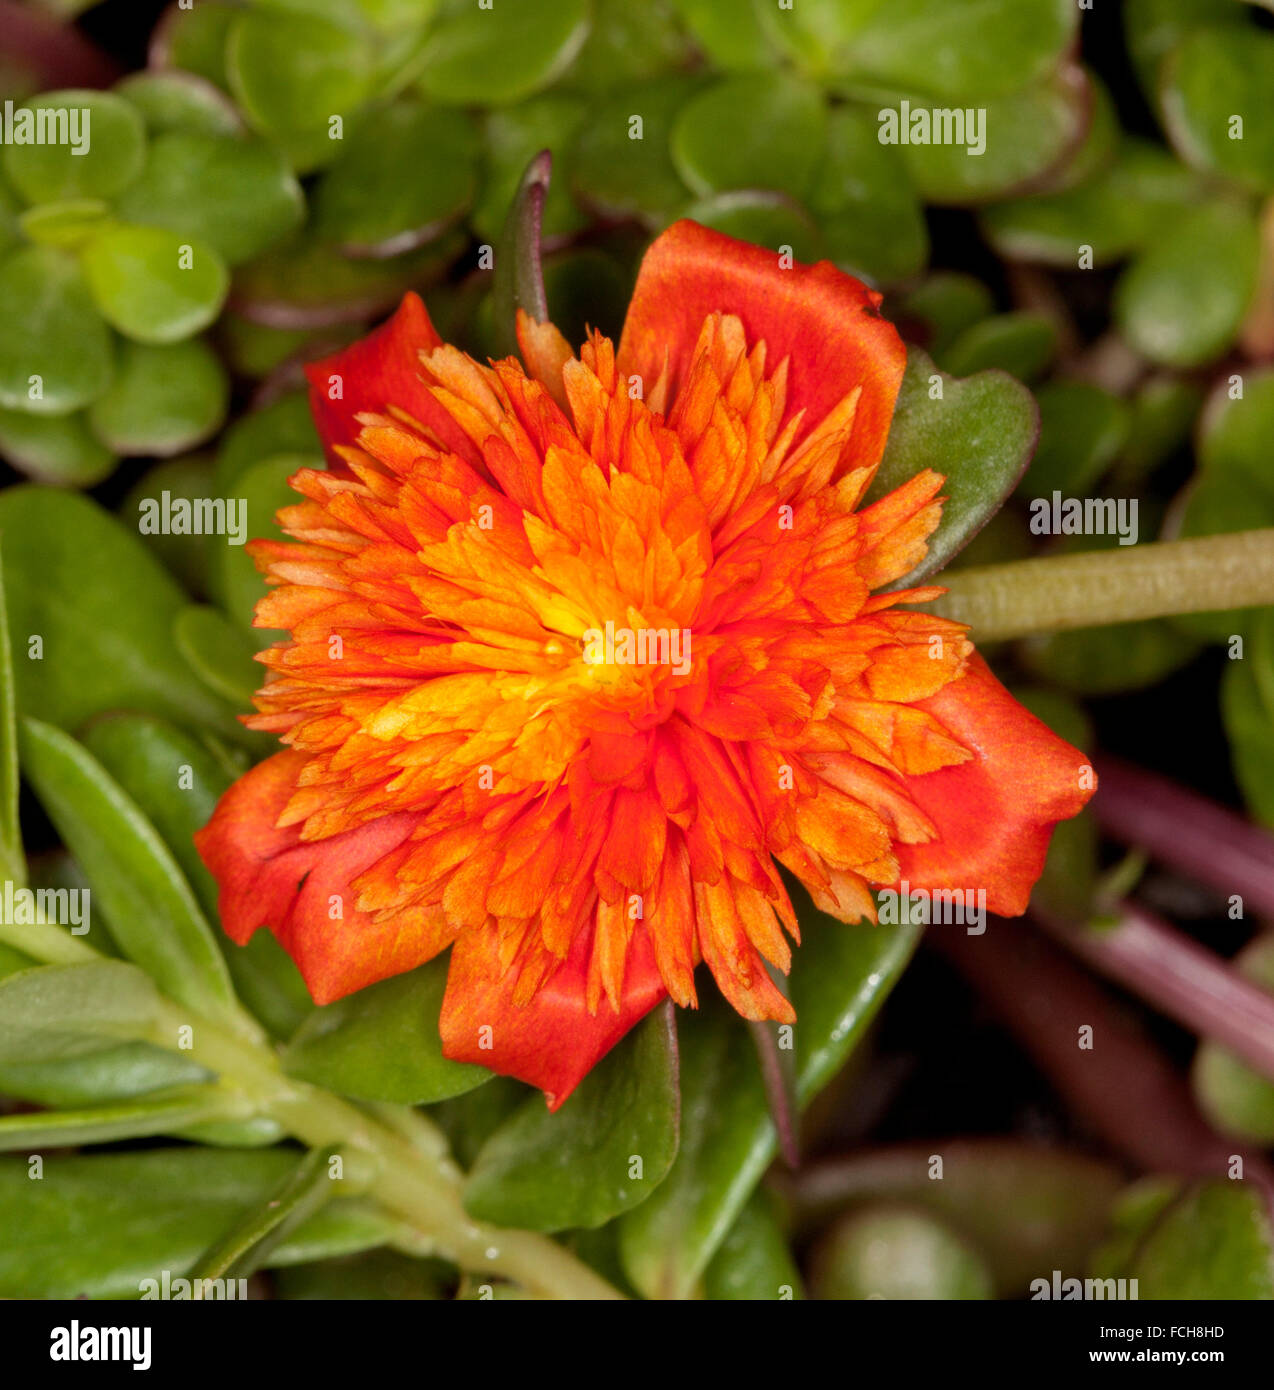 Naranja intenso flor doble y hojas verdes de Portulaca oleracea Summer Stars, perenne, cubierta de tierra, planta de rocalla o contenedor Foto de stock